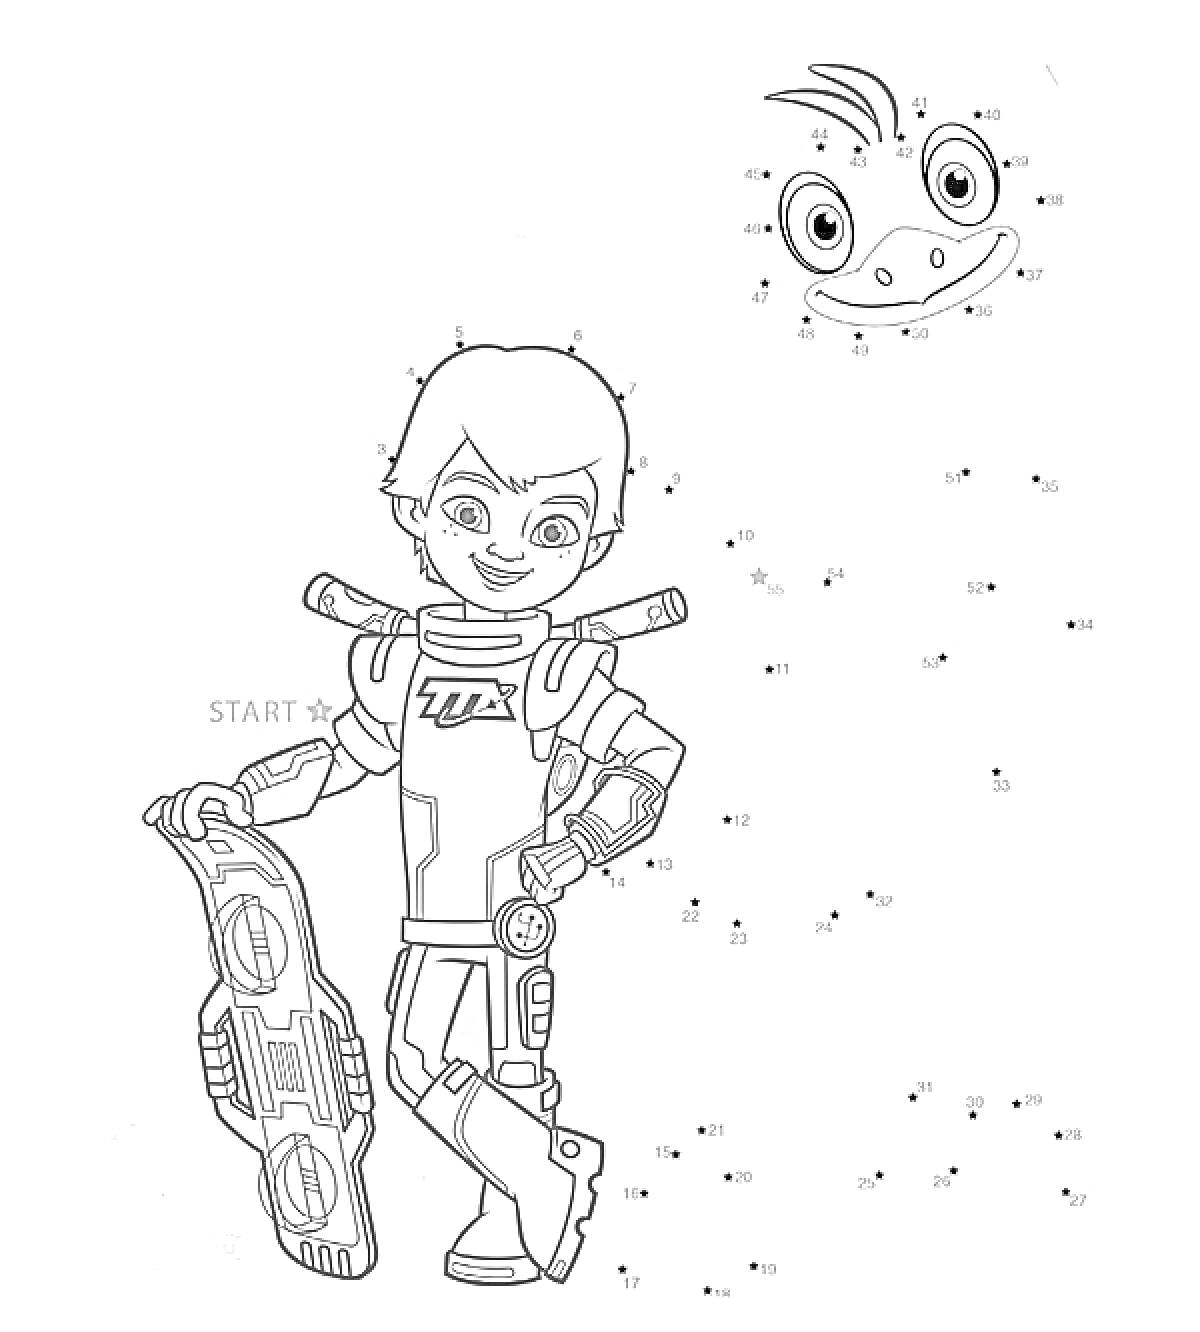 мальчик в космическом костюме с ховербордом и точки для соединения, чтобы нарисовать улыбающегося инопланетного персонажа